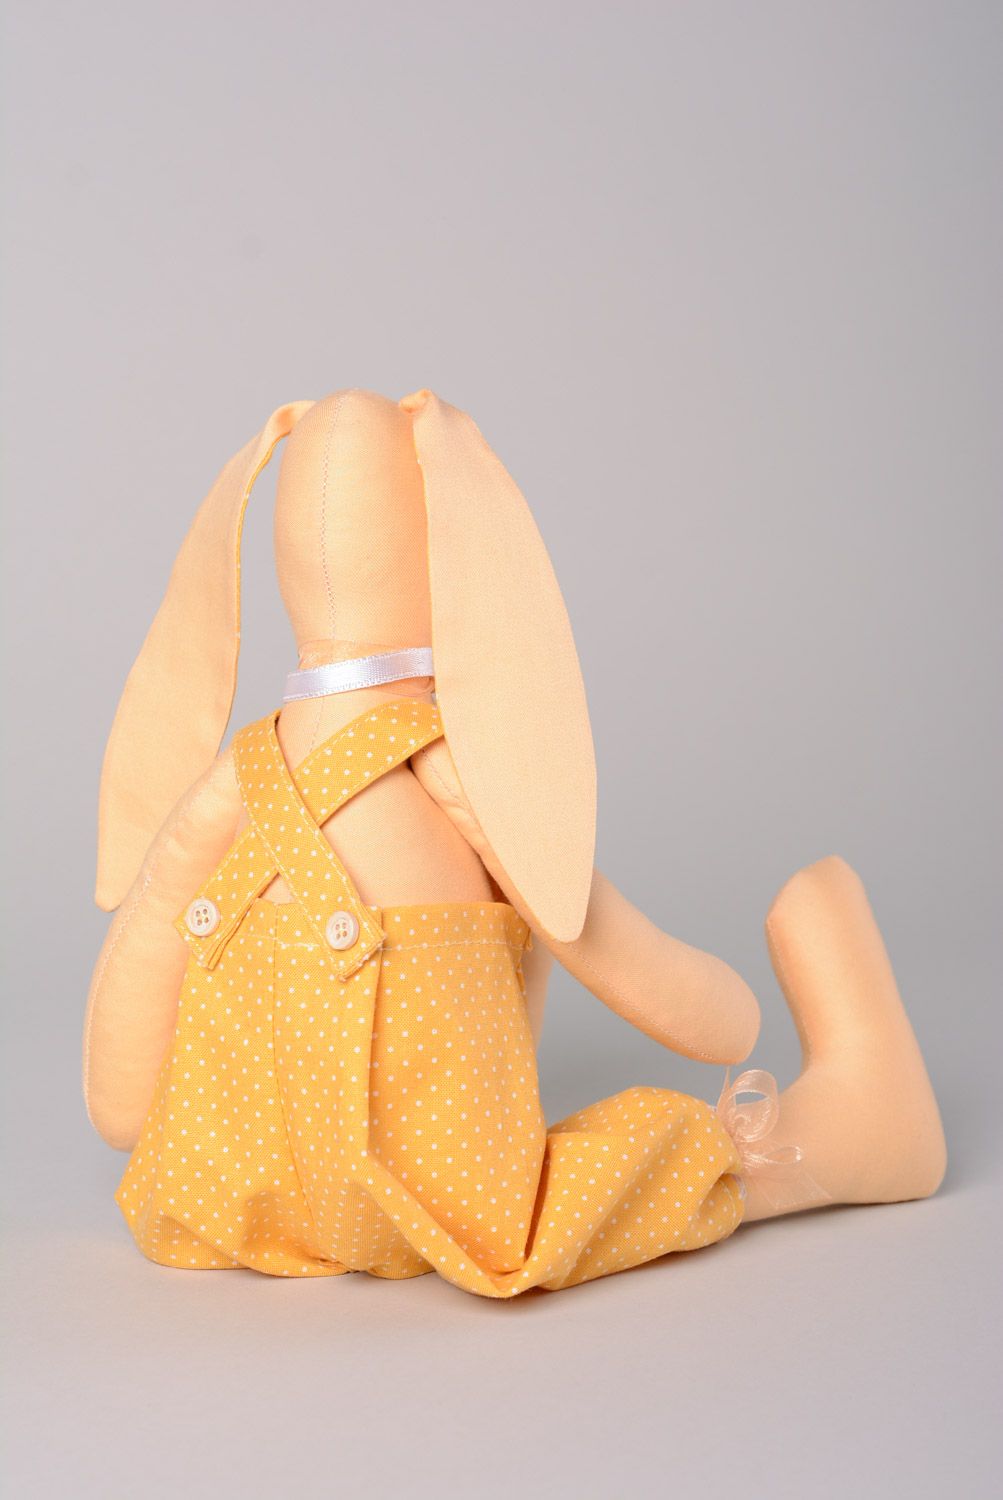 Joli jouet mou fait main Lapine en tissus naturels cadeau pour enfant décor photo 5